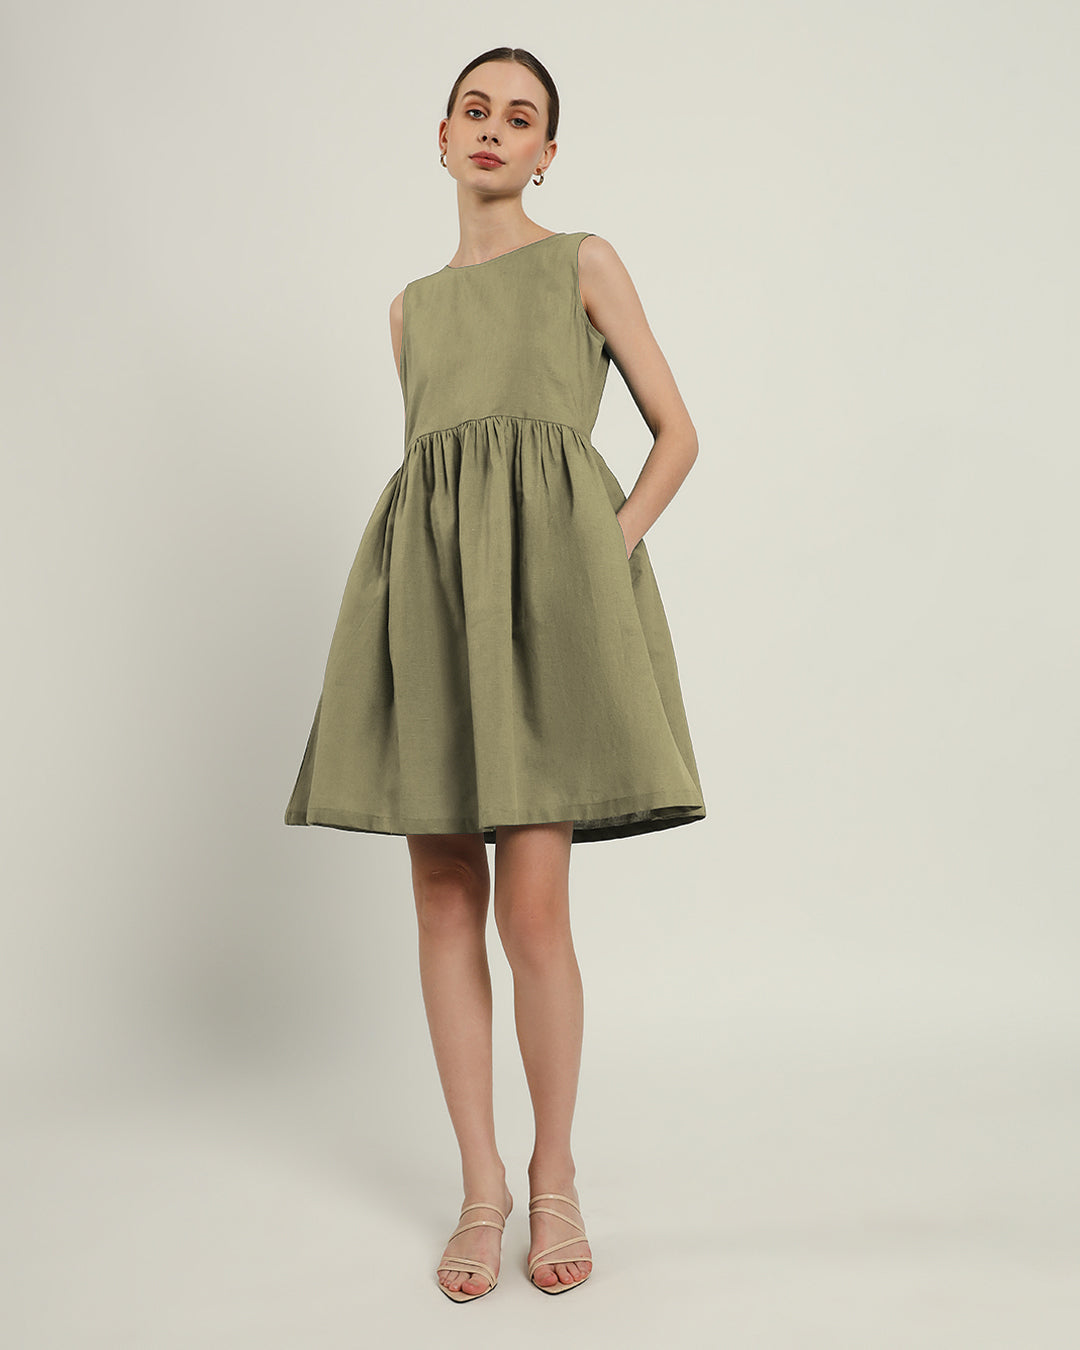 The Chania Daisy Olive Linen Dress